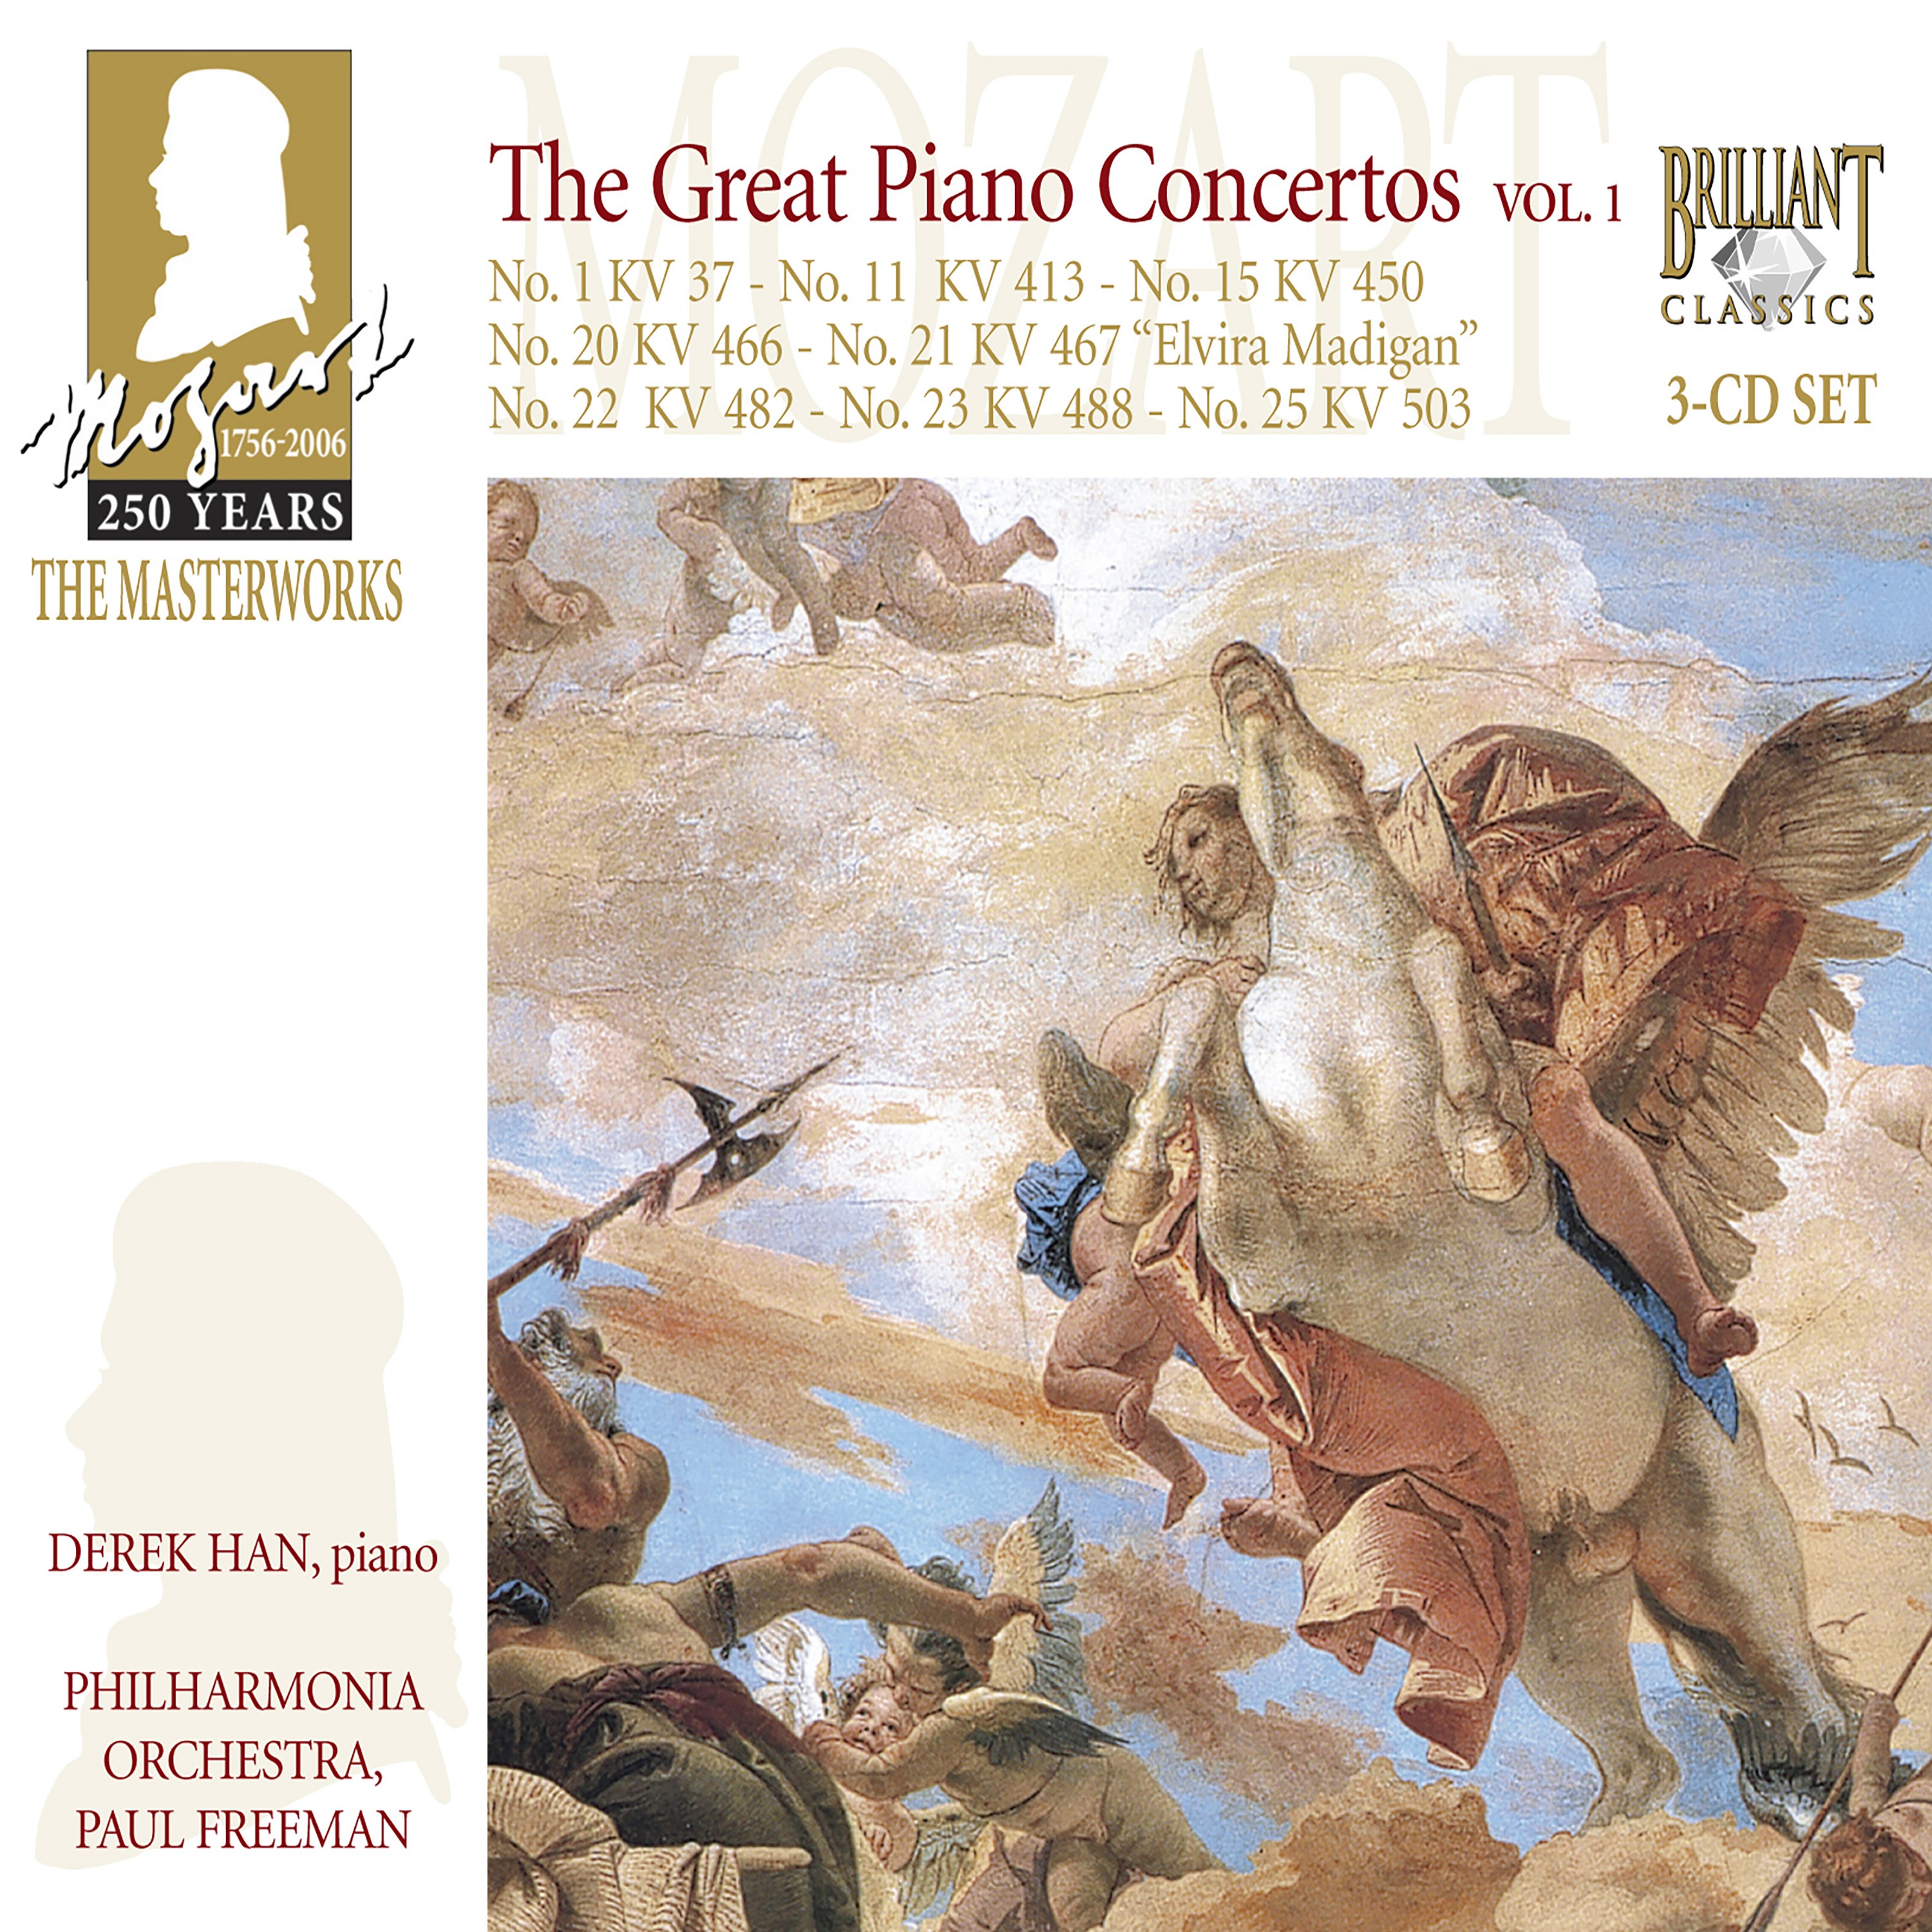 Piano Concerto No. 25 In C Major, K. 503: I. Allegro maestoso